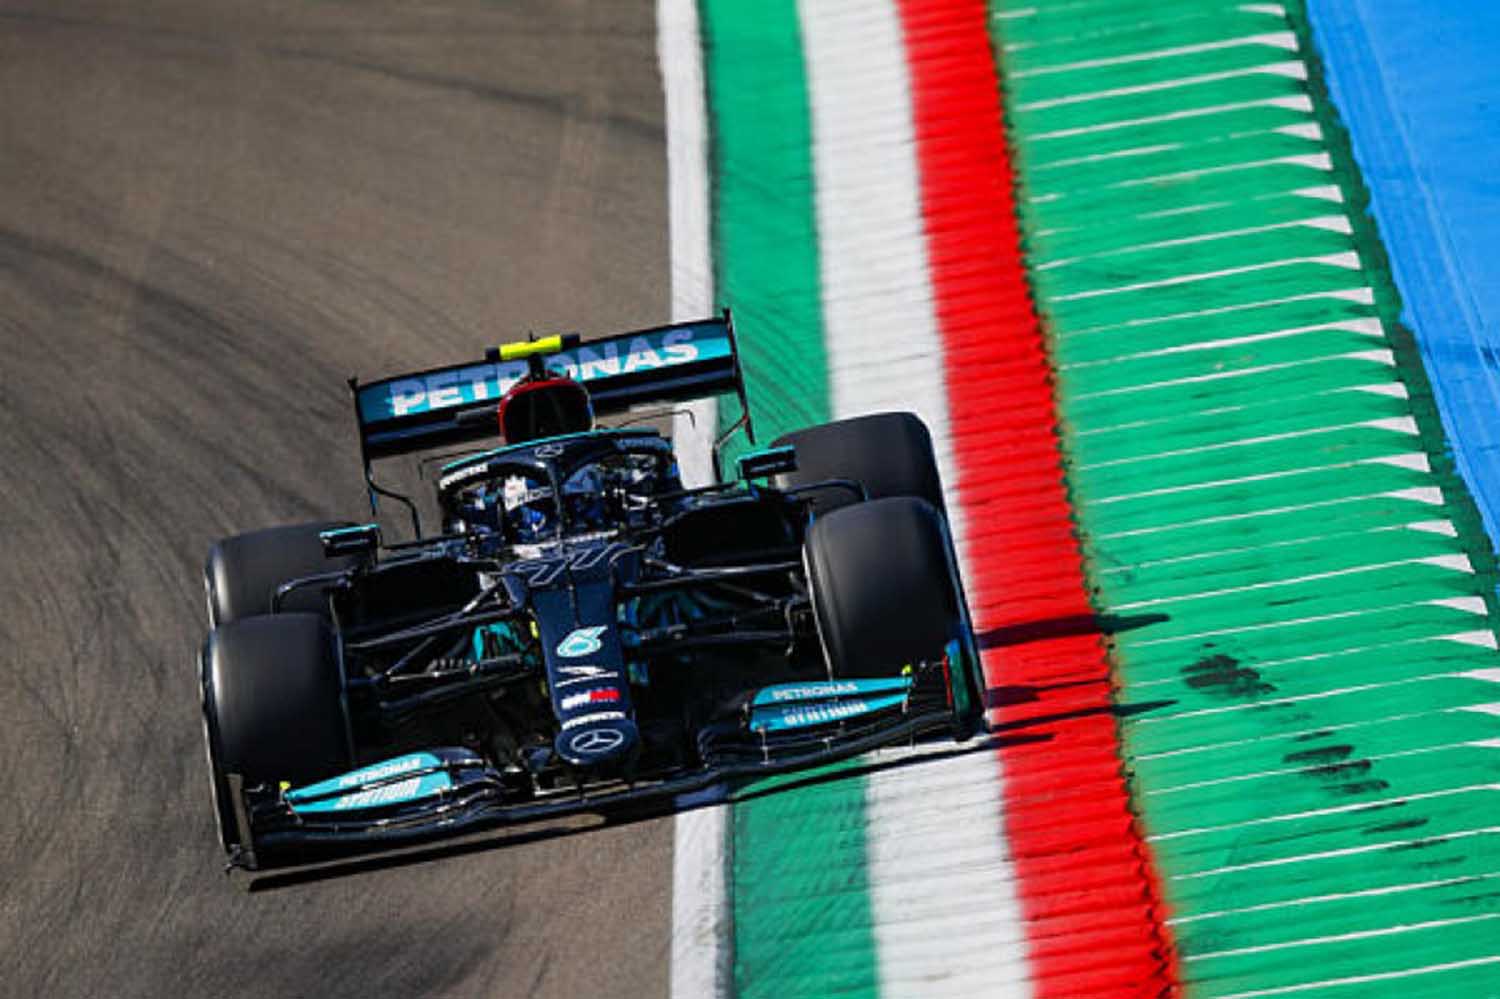 F1 – Bottas Quickest In First Practice For Emilia Romagna Grand Prix Ahead Of Hamilton, Verstappen